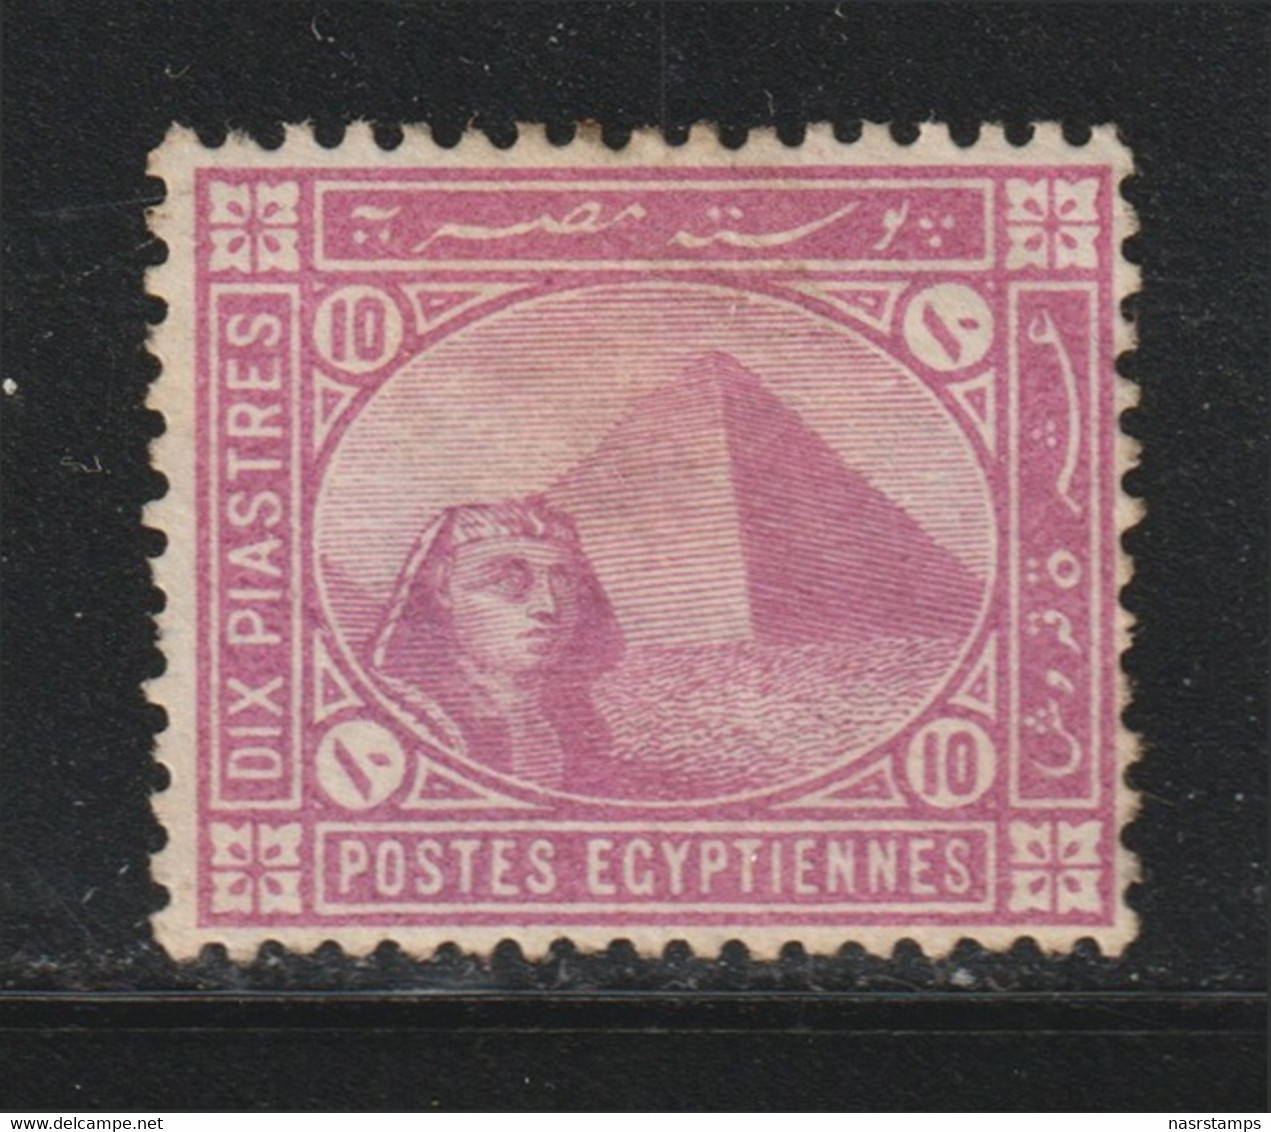 Egypt - 1902 - Rare - ( De La Rue - 10p ) - MH - High C.V. - 1866-1914 Ägypten Khediva